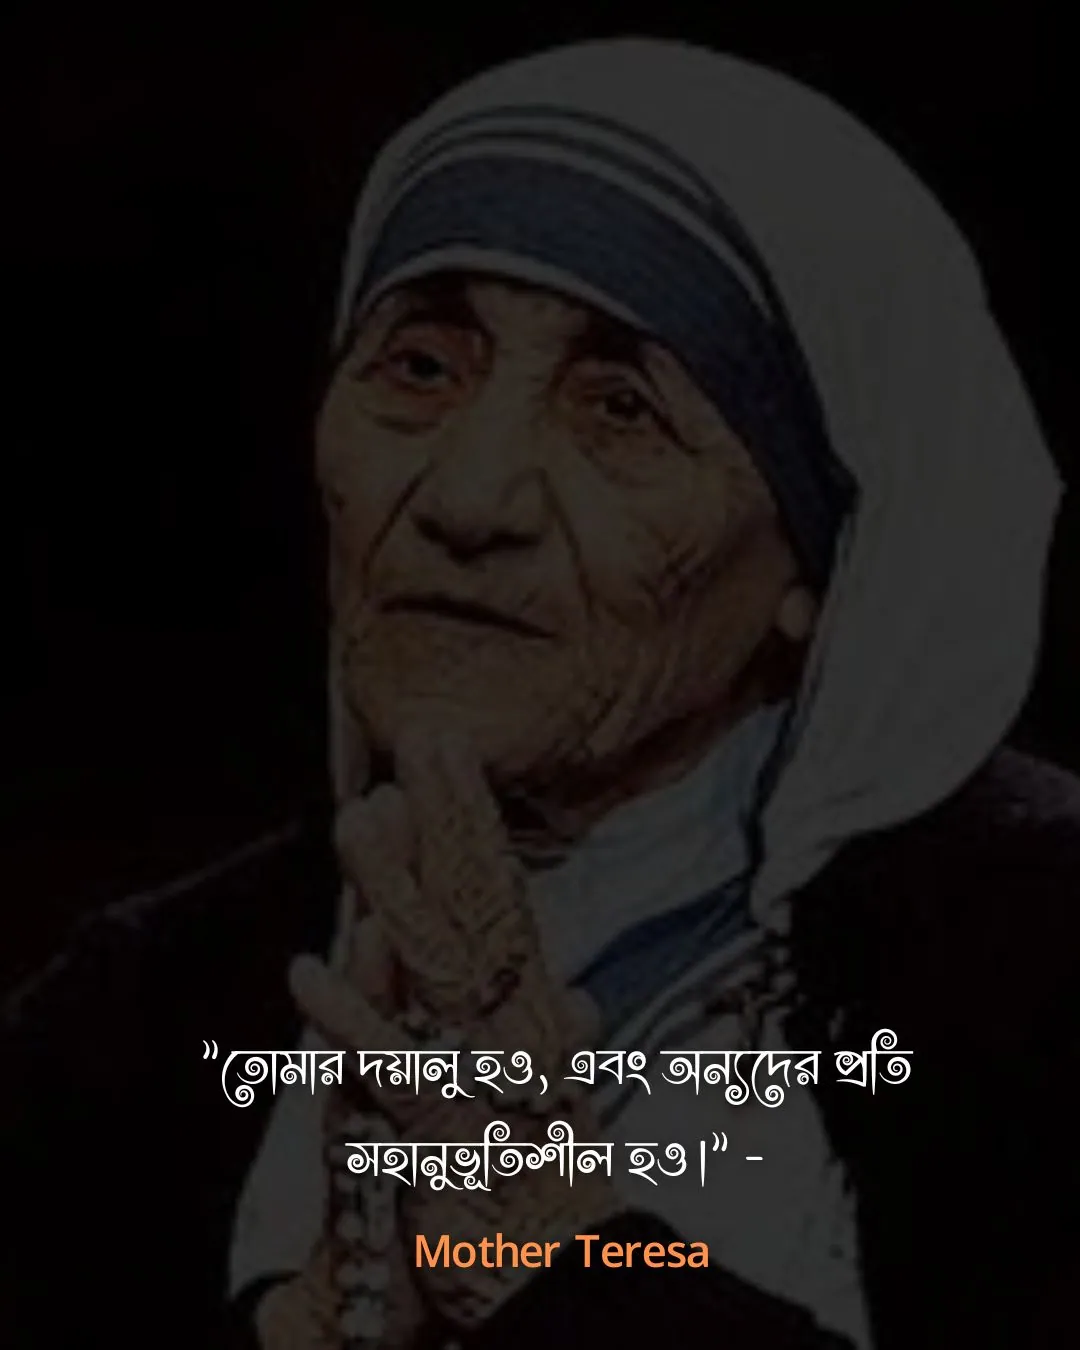 জীবন পরিবর্তন নিয়ে উক্তি-. Mother Teresa